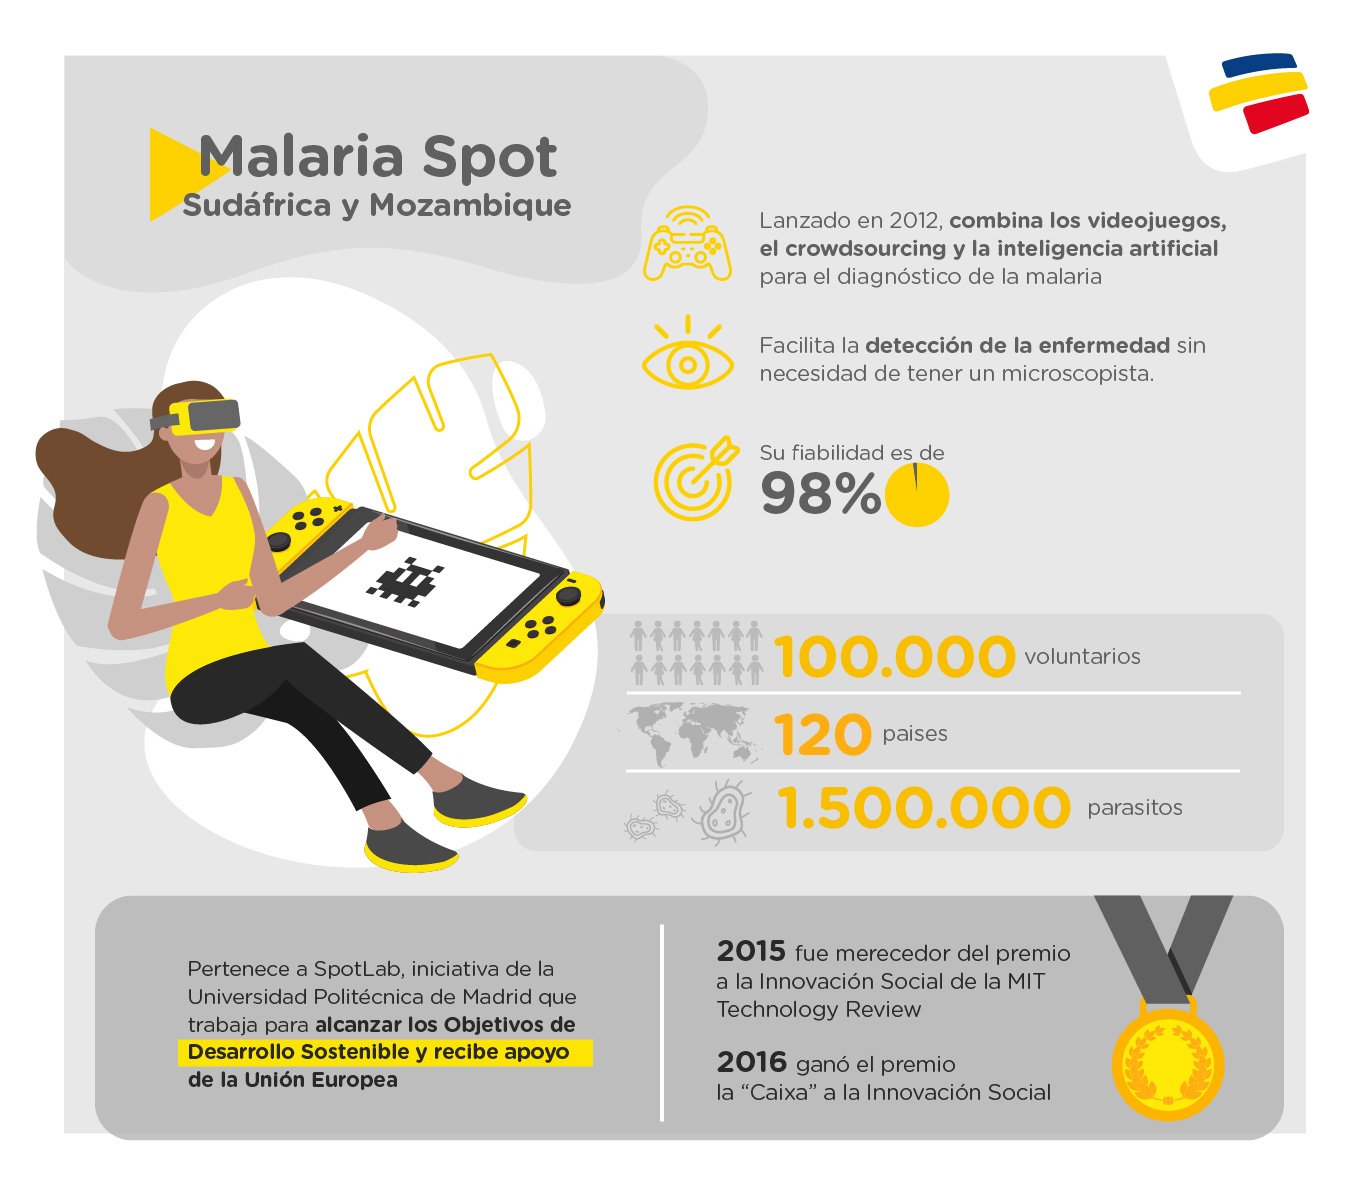 Malaria spot